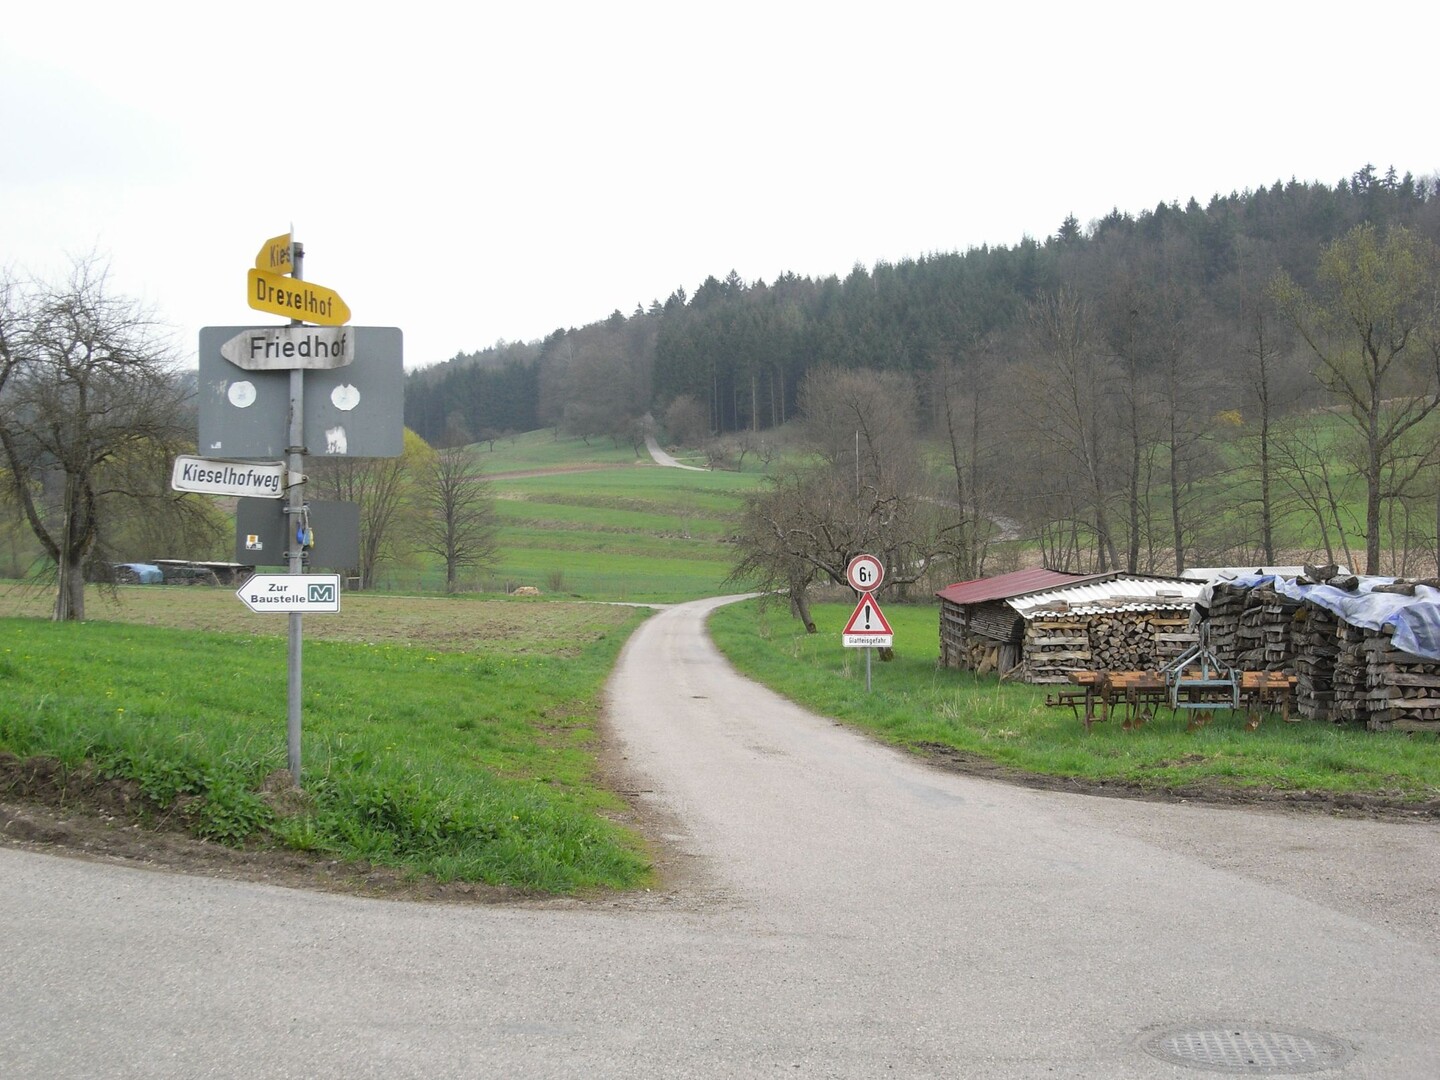 Drexelhof 02: Beim Abzweig Kieselhof (nach links) und Drexelhof (gradeaus). An der Waldkante kann man die Steilheit der zweiten Rampe erahnen.